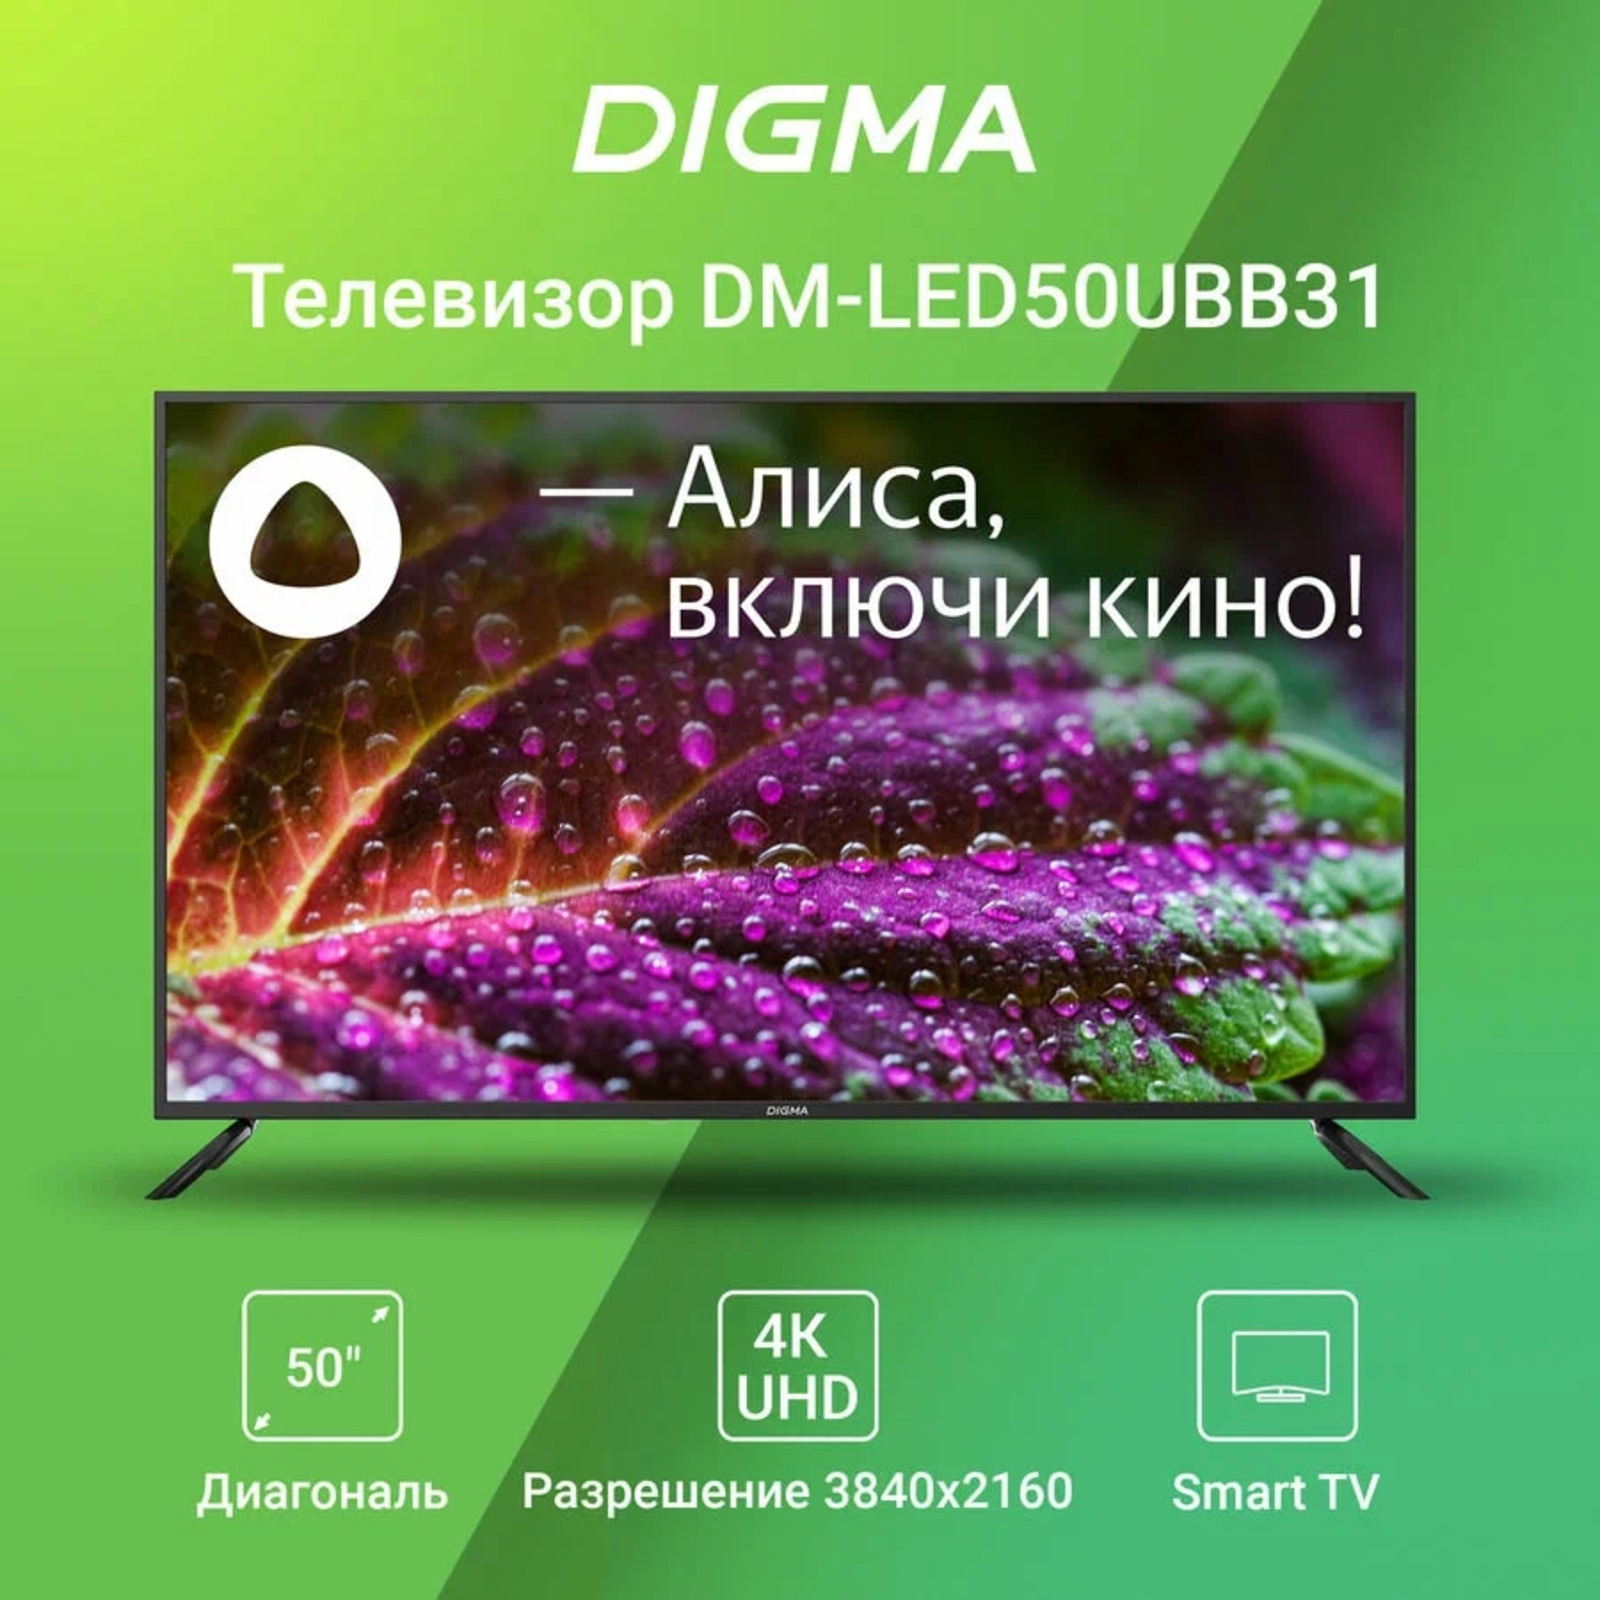 Телевизоры digma смарт тв. DM-led55ubb31. Телевизор Дигма 55 дюймов. Digma DM-led55ubb31 55" Алиса.